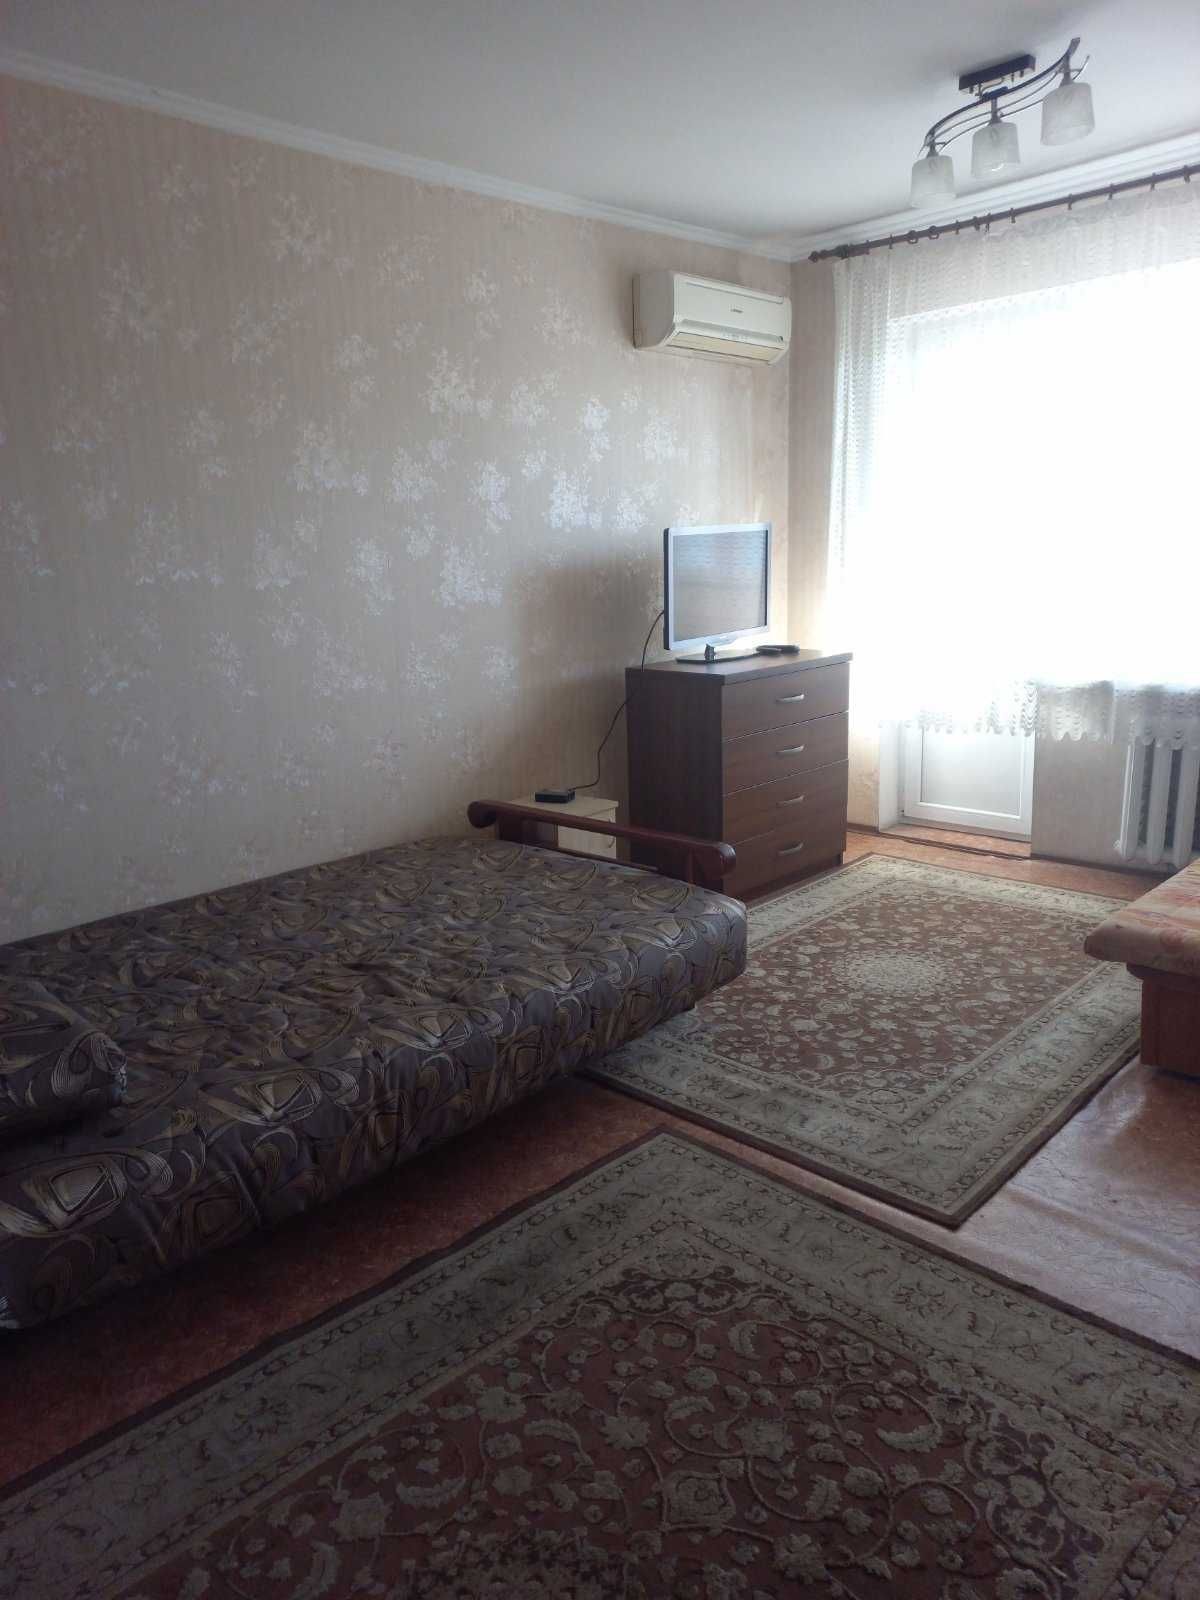 Продается квартира на Балковской,  район Приморского суда.